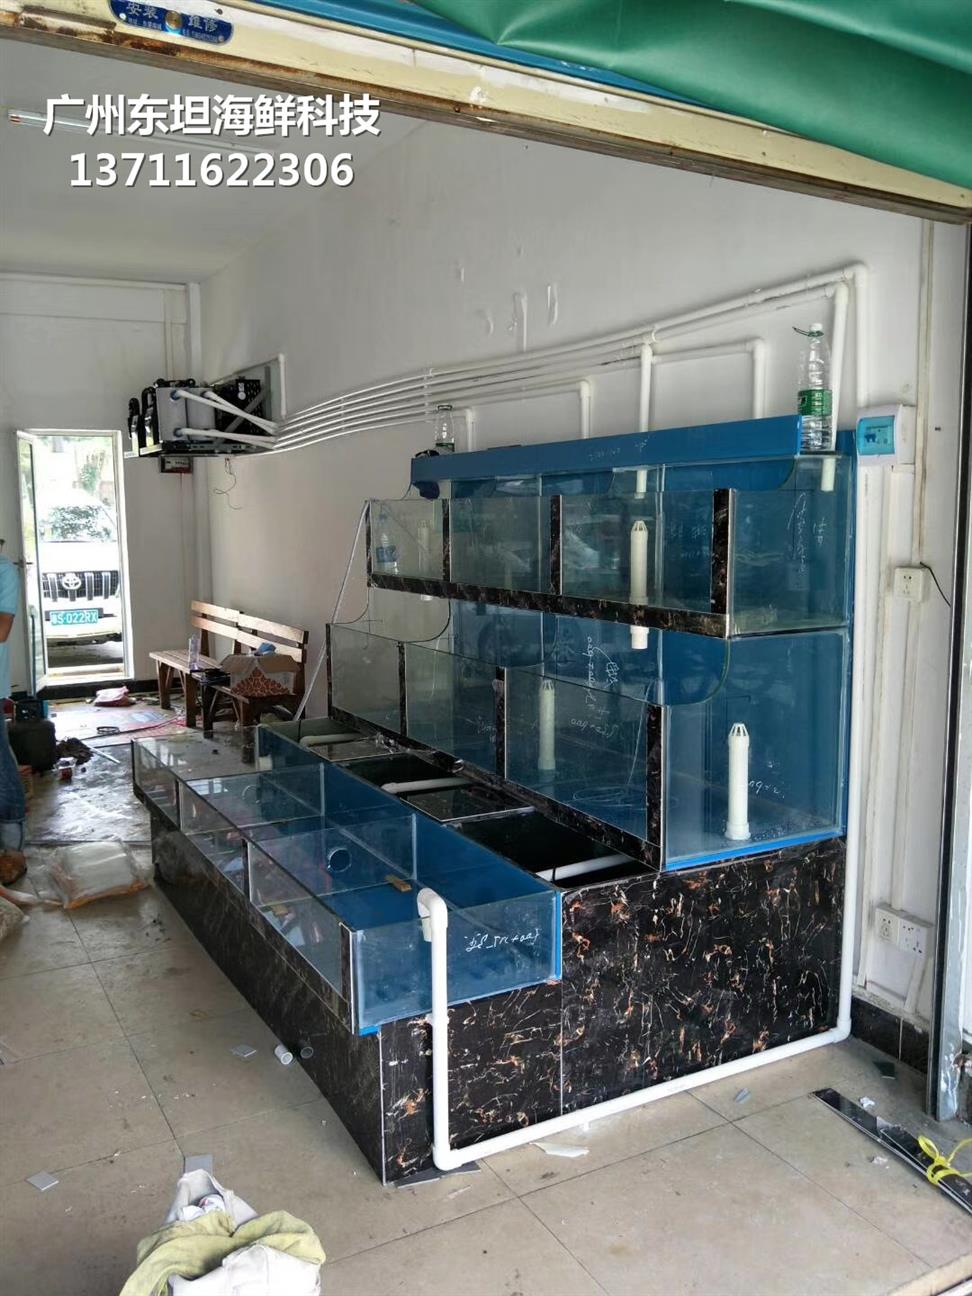 广州越秀玻璃海鲜池公司